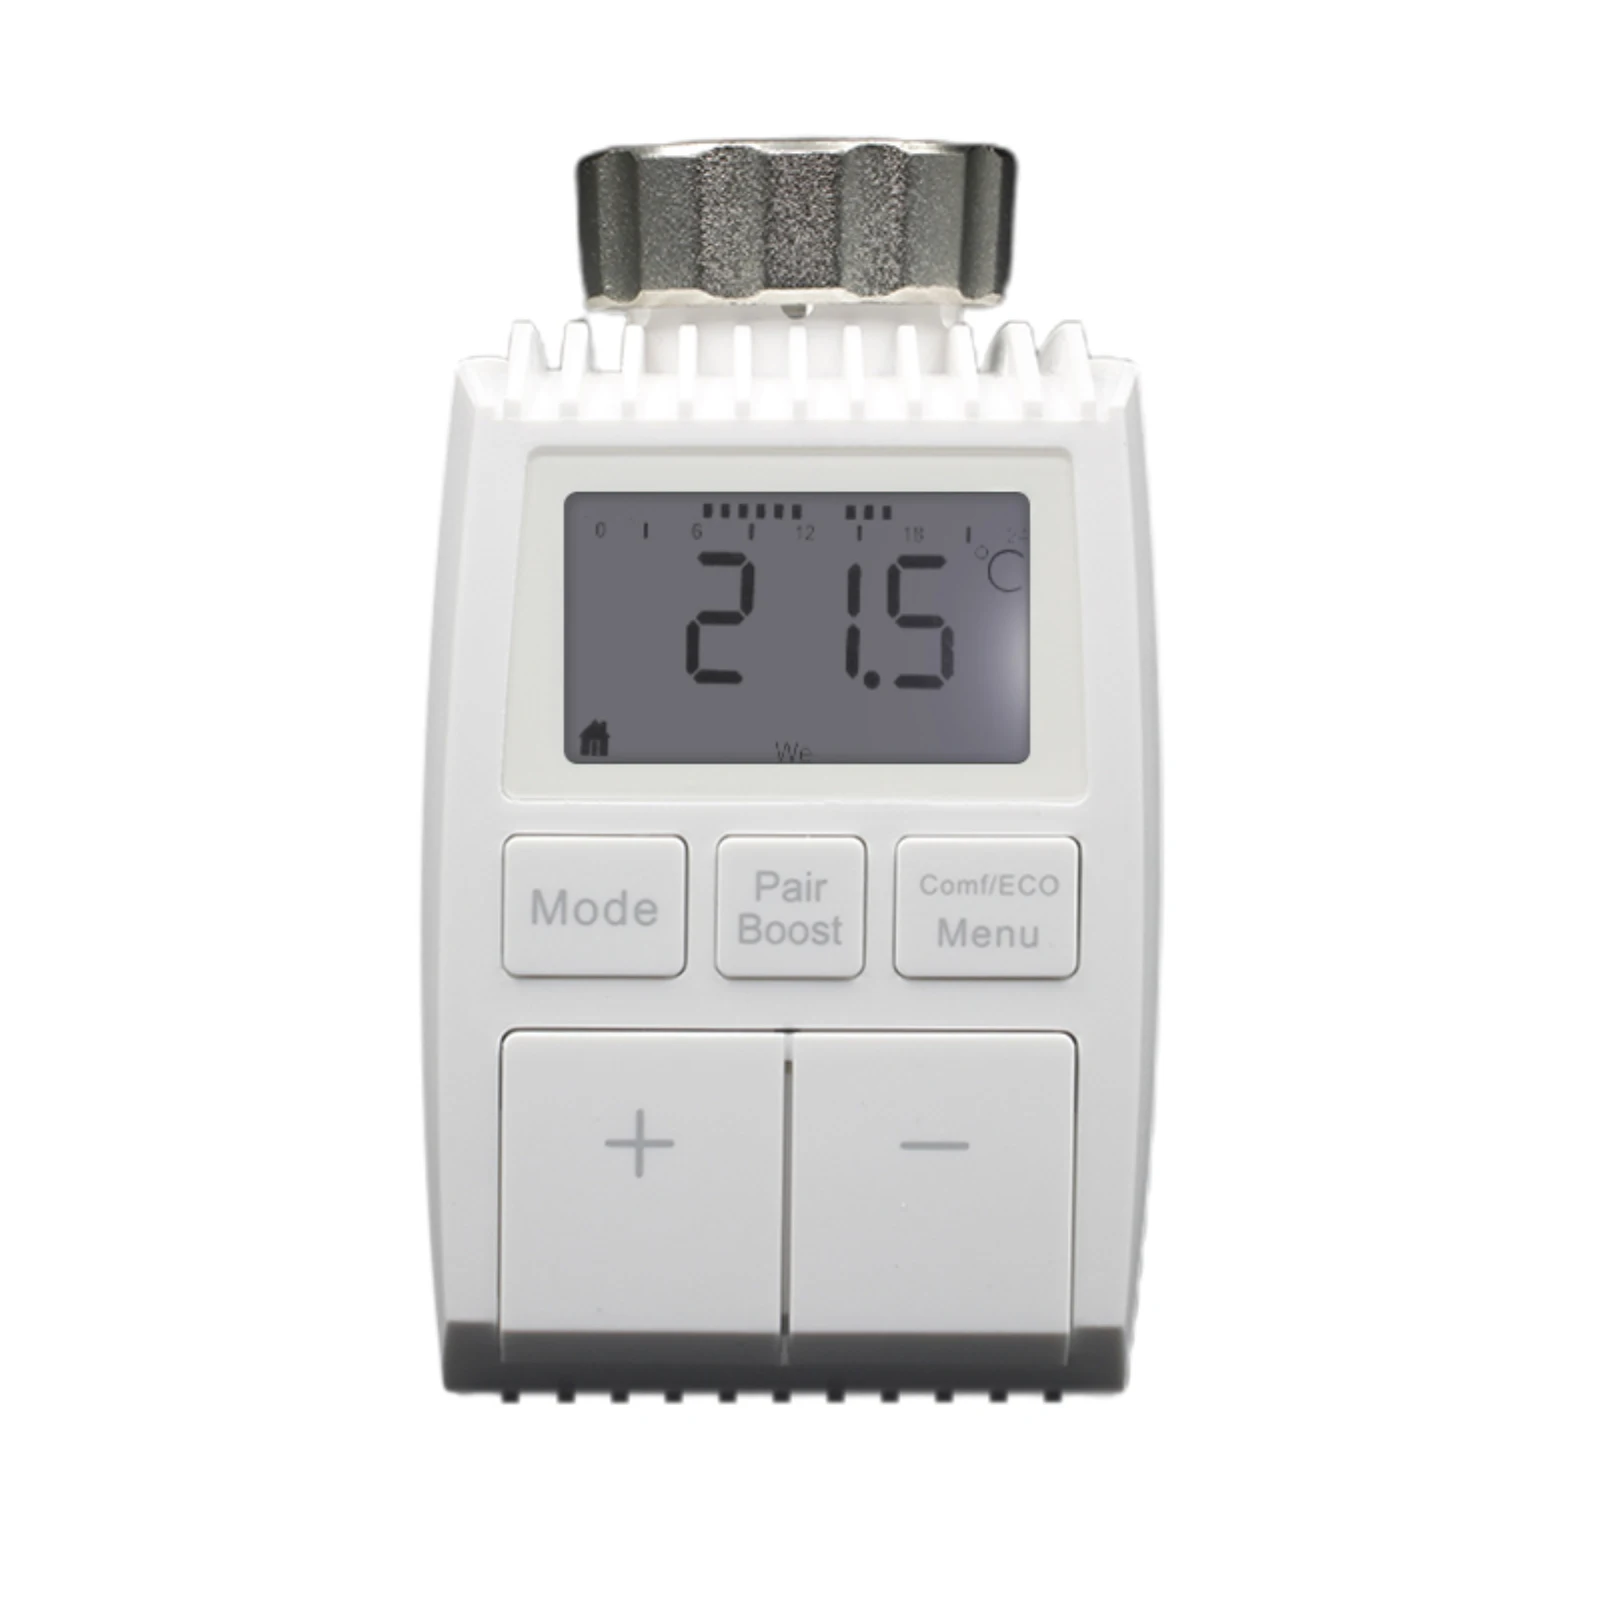 

Мини-термостат с регулятором температуры, программируемый на Ip20 градусов, 2,4 ГГц